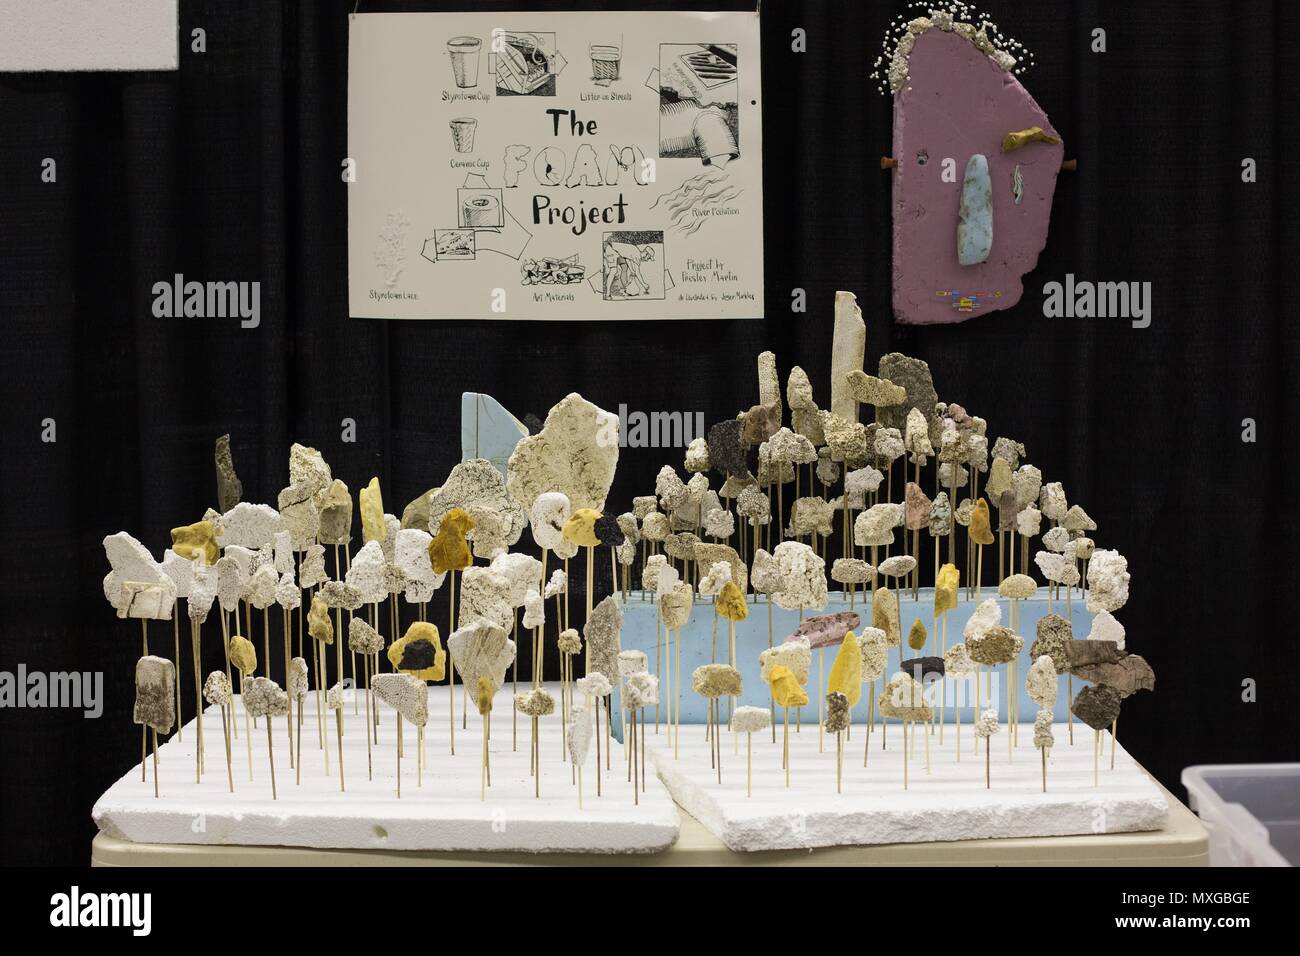 Eine Anzeige von Schaum, die zu verschiedenen Elementen ausgesetzt wurde, am Flughafen Minneapolis-St. Paul Mini Maker Faire in St. Paul, Minnesota, USA. Stockfoto